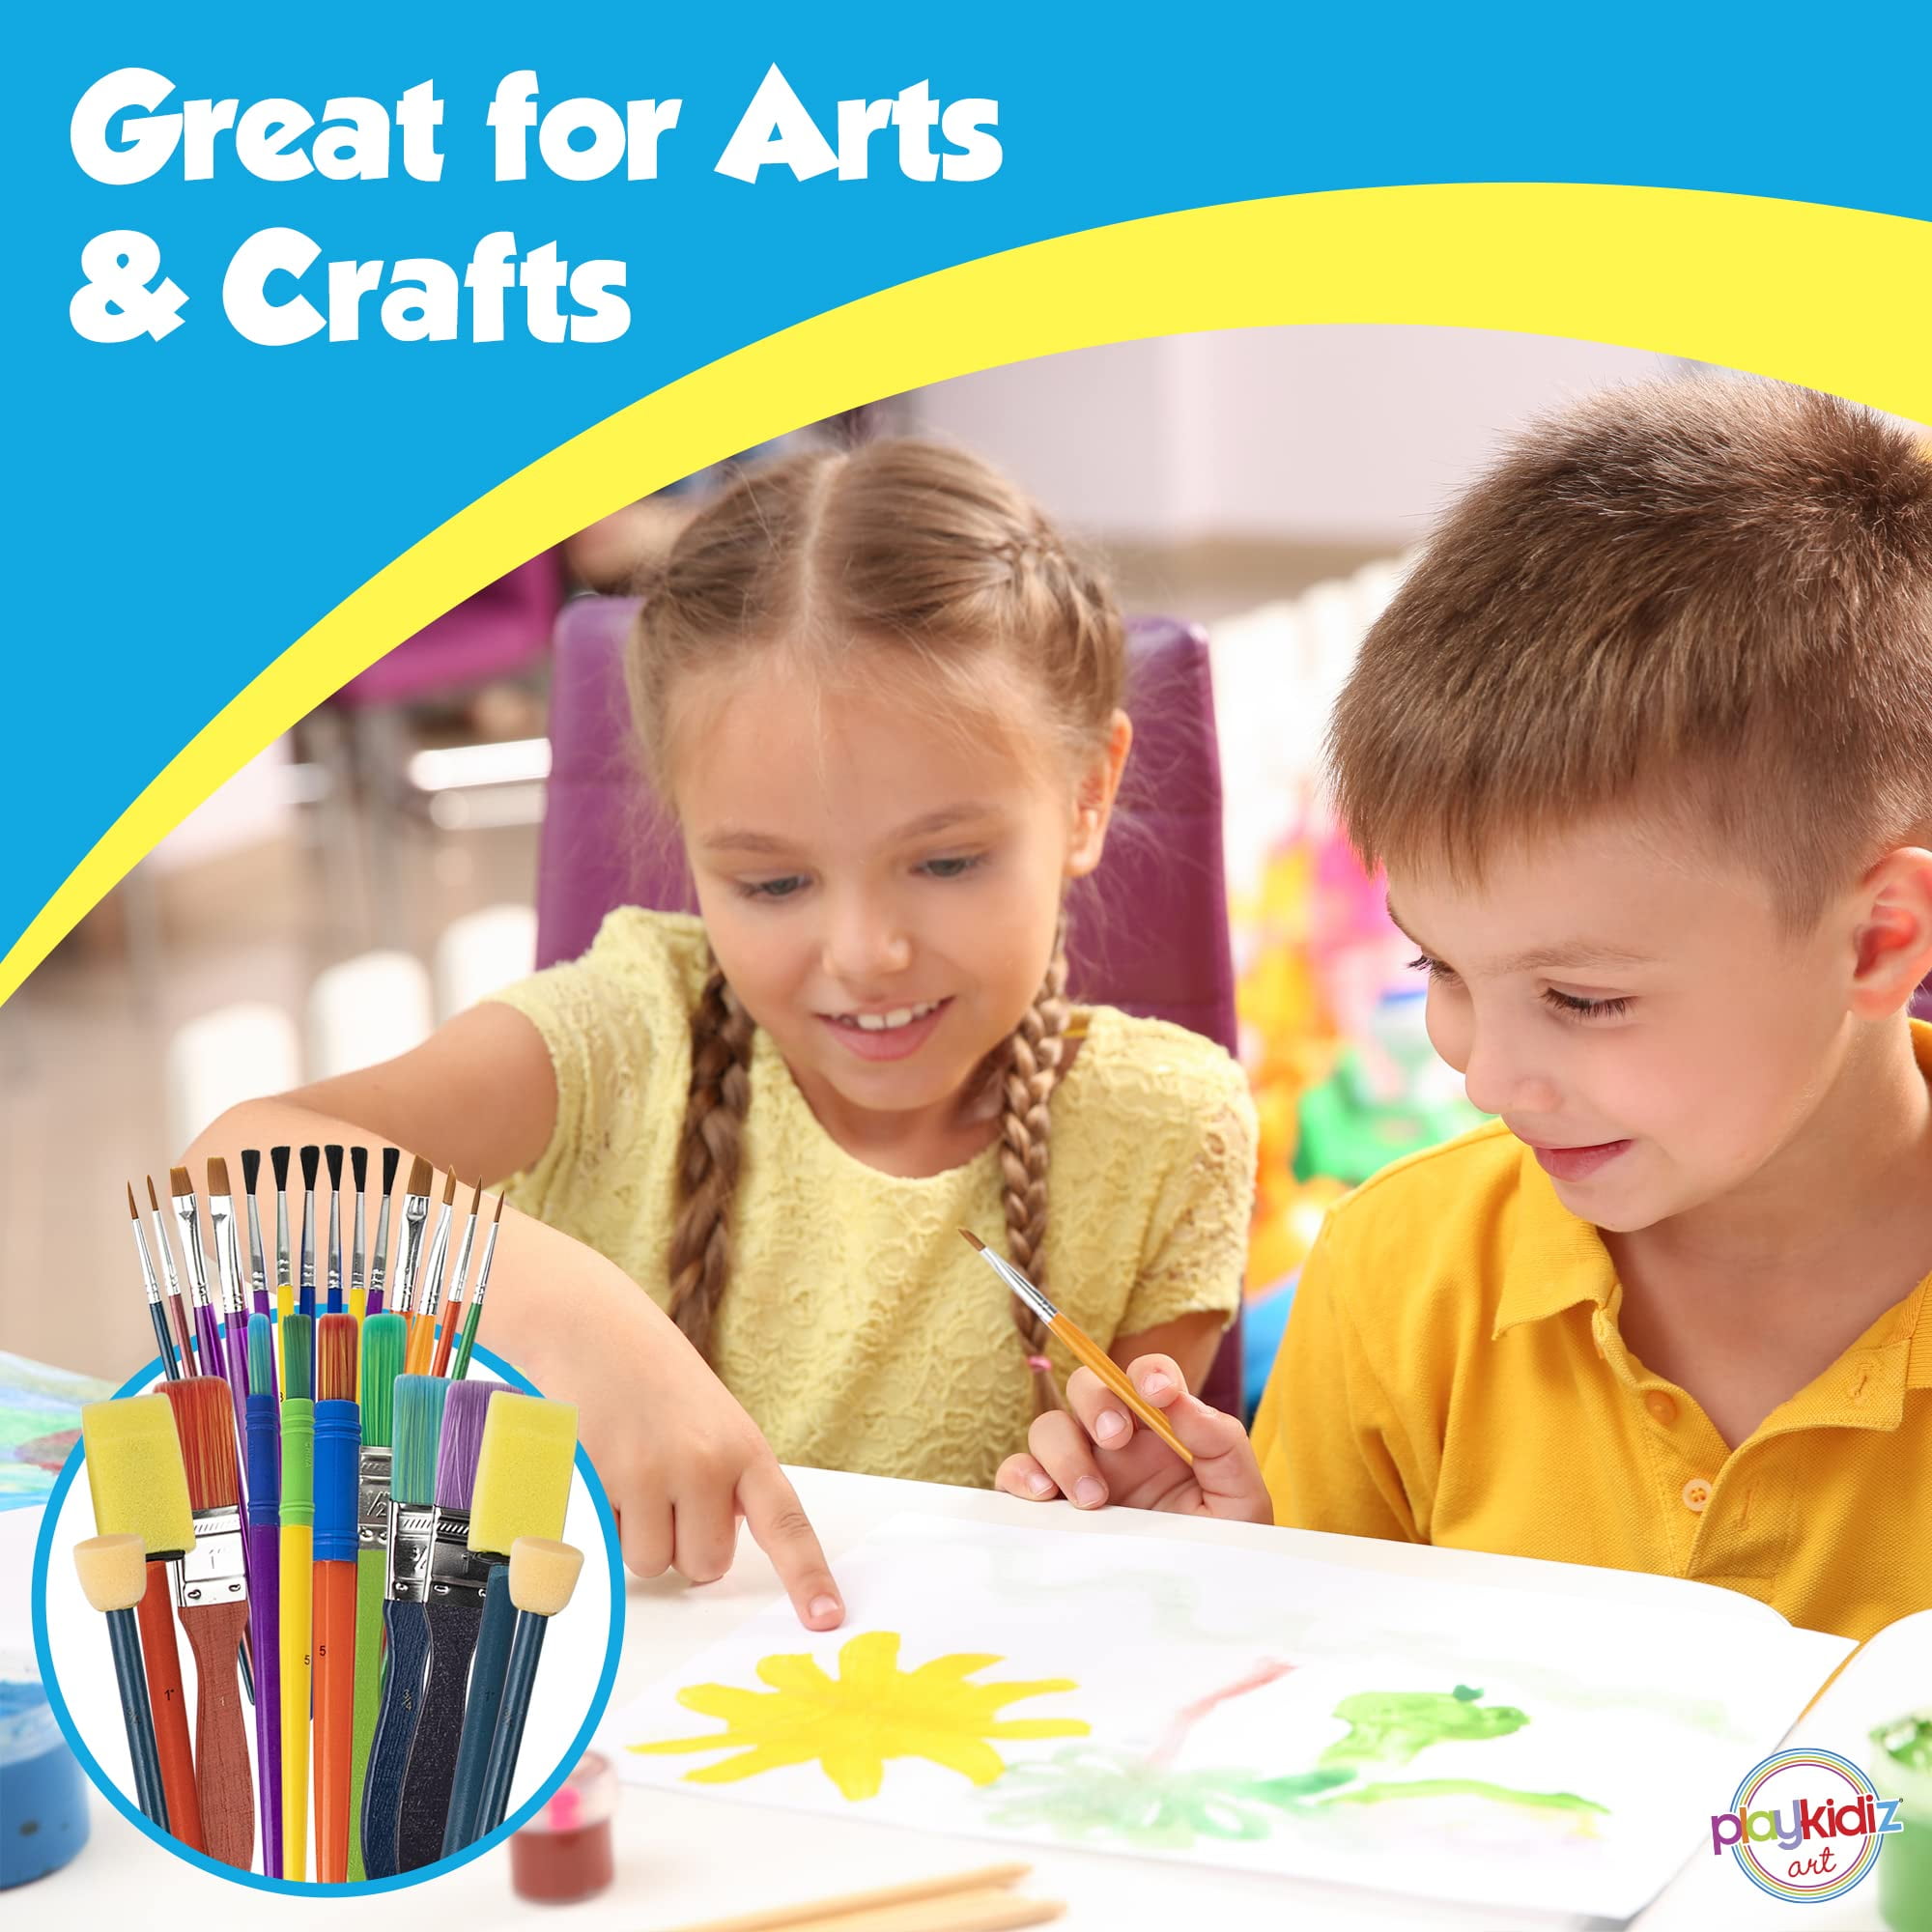 Better Paint Brush Habits for Kids • TeachKidsArt